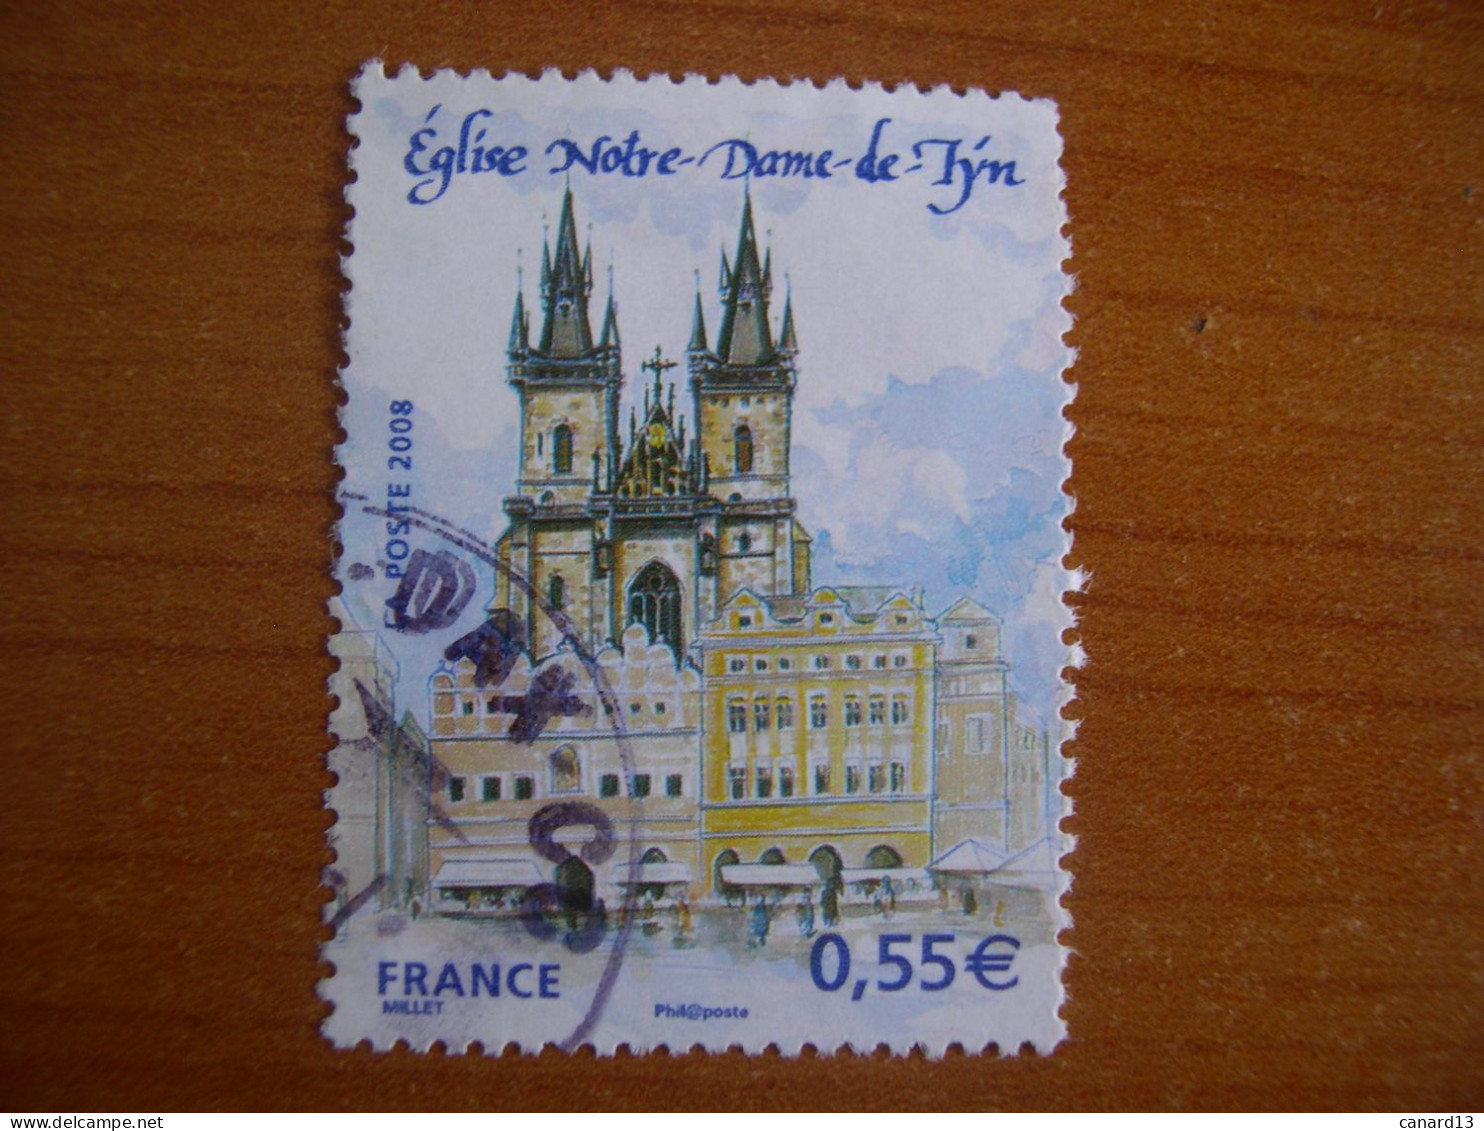 France Obl   N° 4303 Cachet Rond Noir - Used Stamps